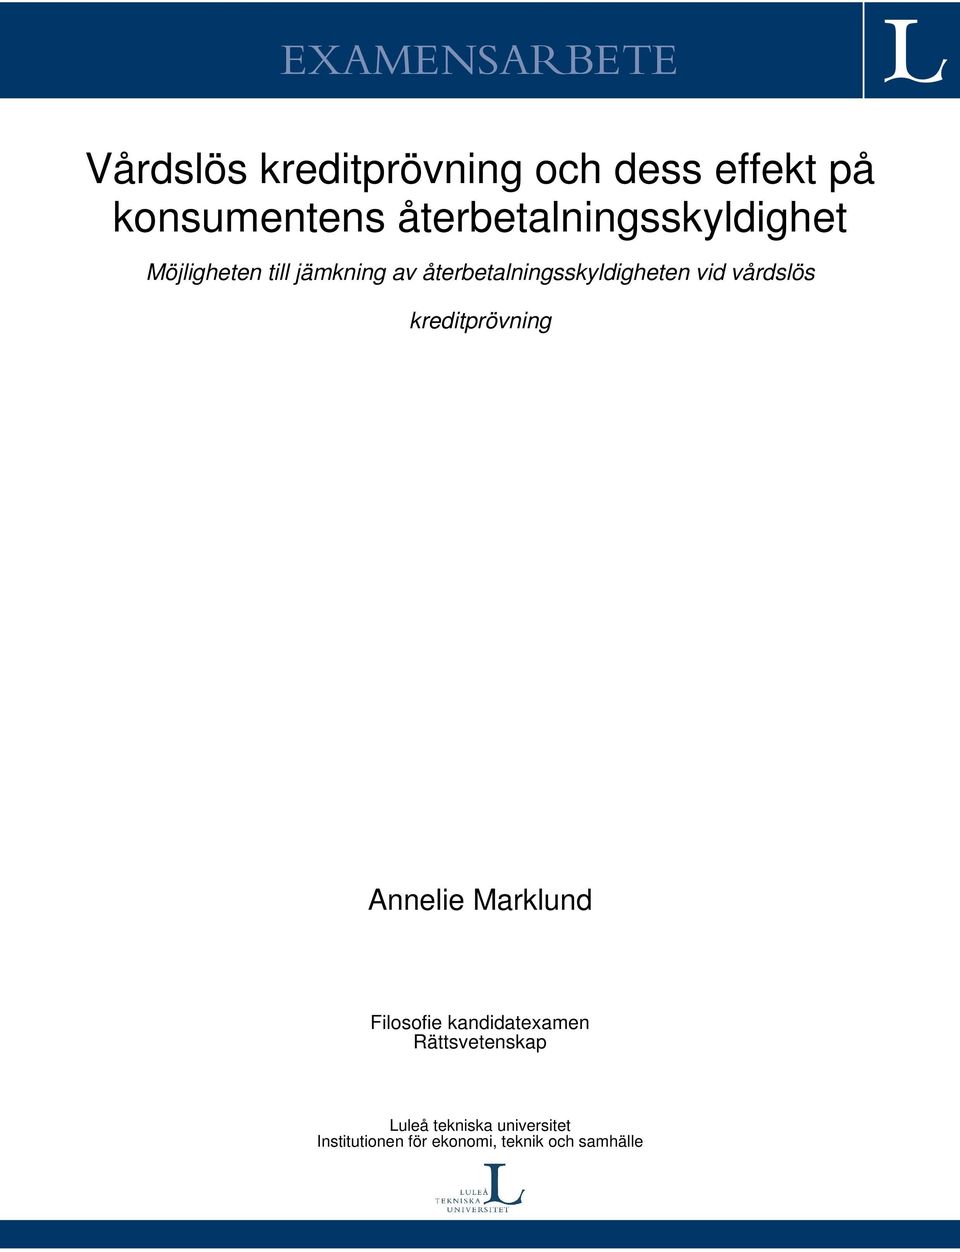 återbetalningsskyldigheten vid vårdslös kreditprövning Annelie Marklund